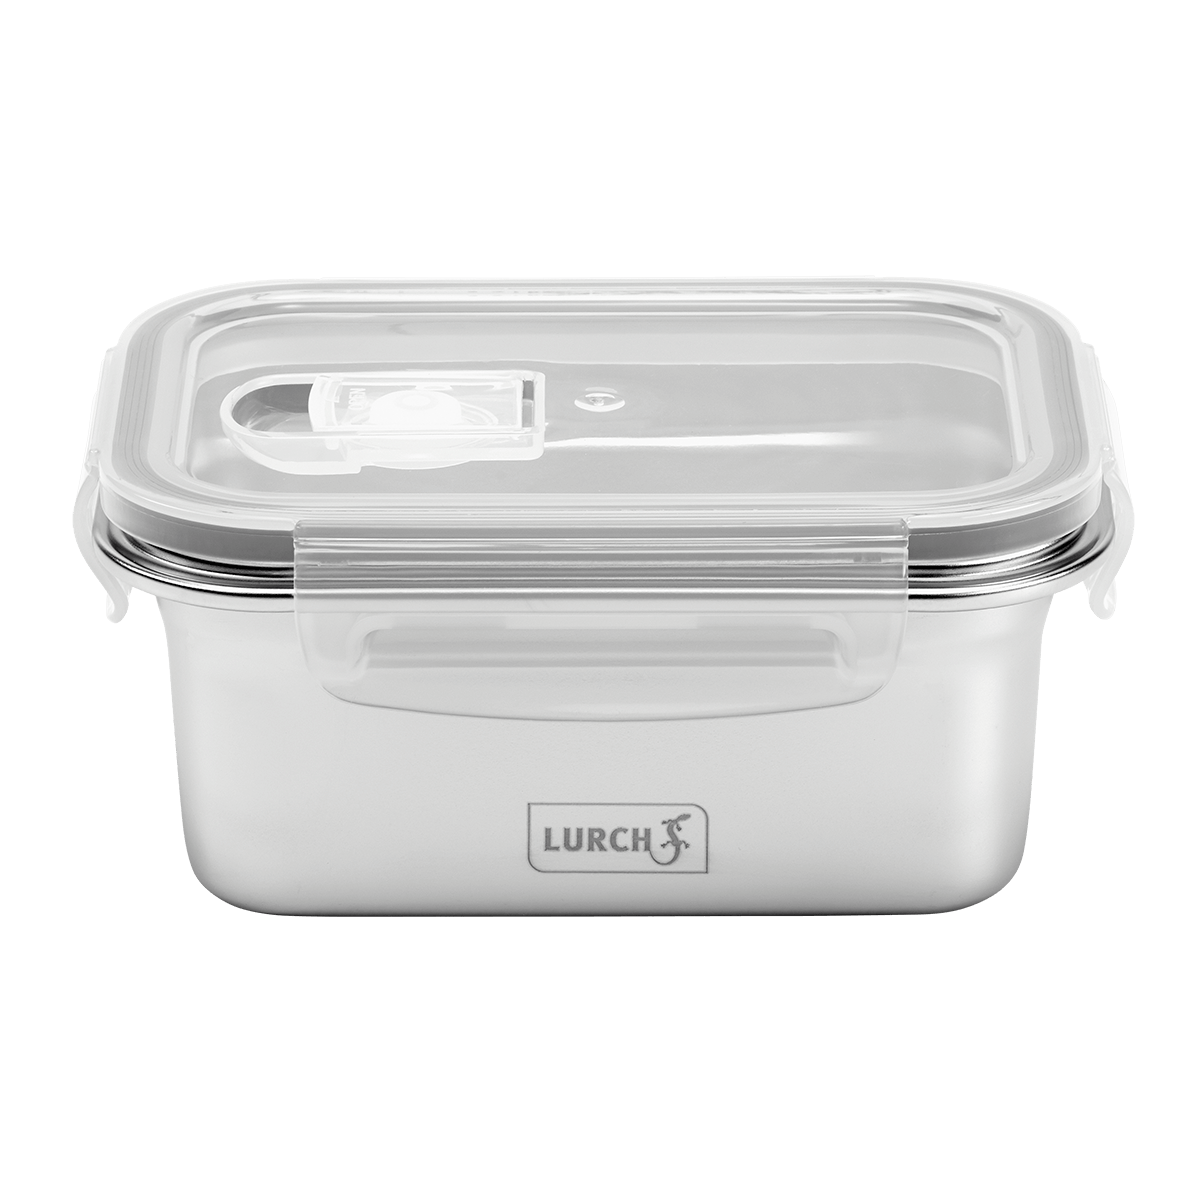 LURCH Lunchbox Safety EDS 500ml mit Unterdruckventil